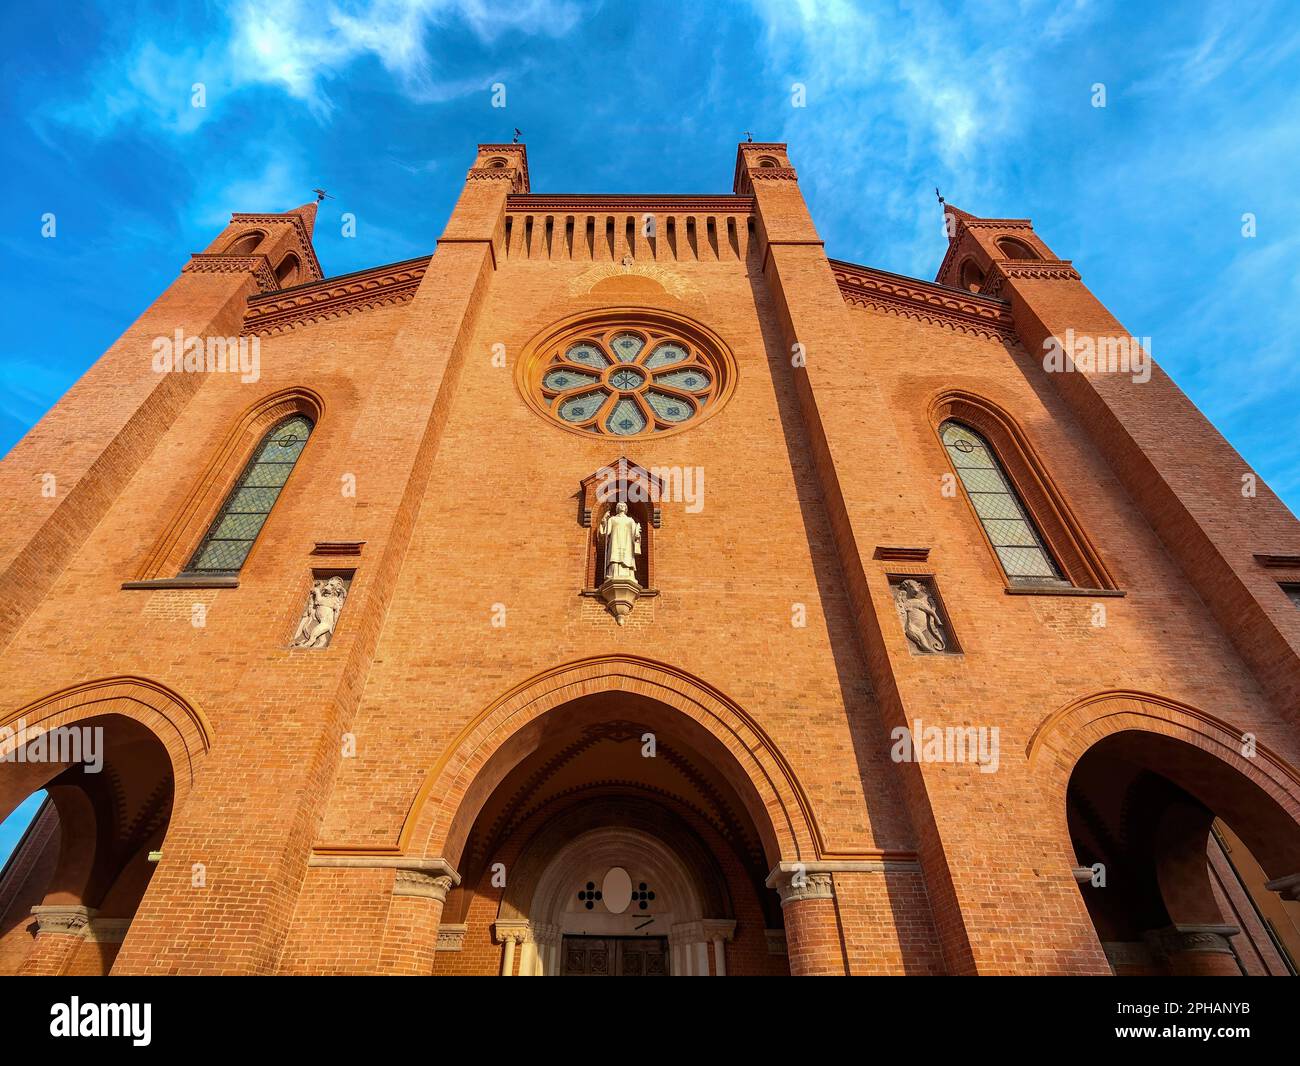 Fassade der Kathedrale San Lorenzo (auch bekannt als Duomo) unter blauem Himmel in Alba, Piemont, Norditalien (niedriger Winkel). Stockfoto